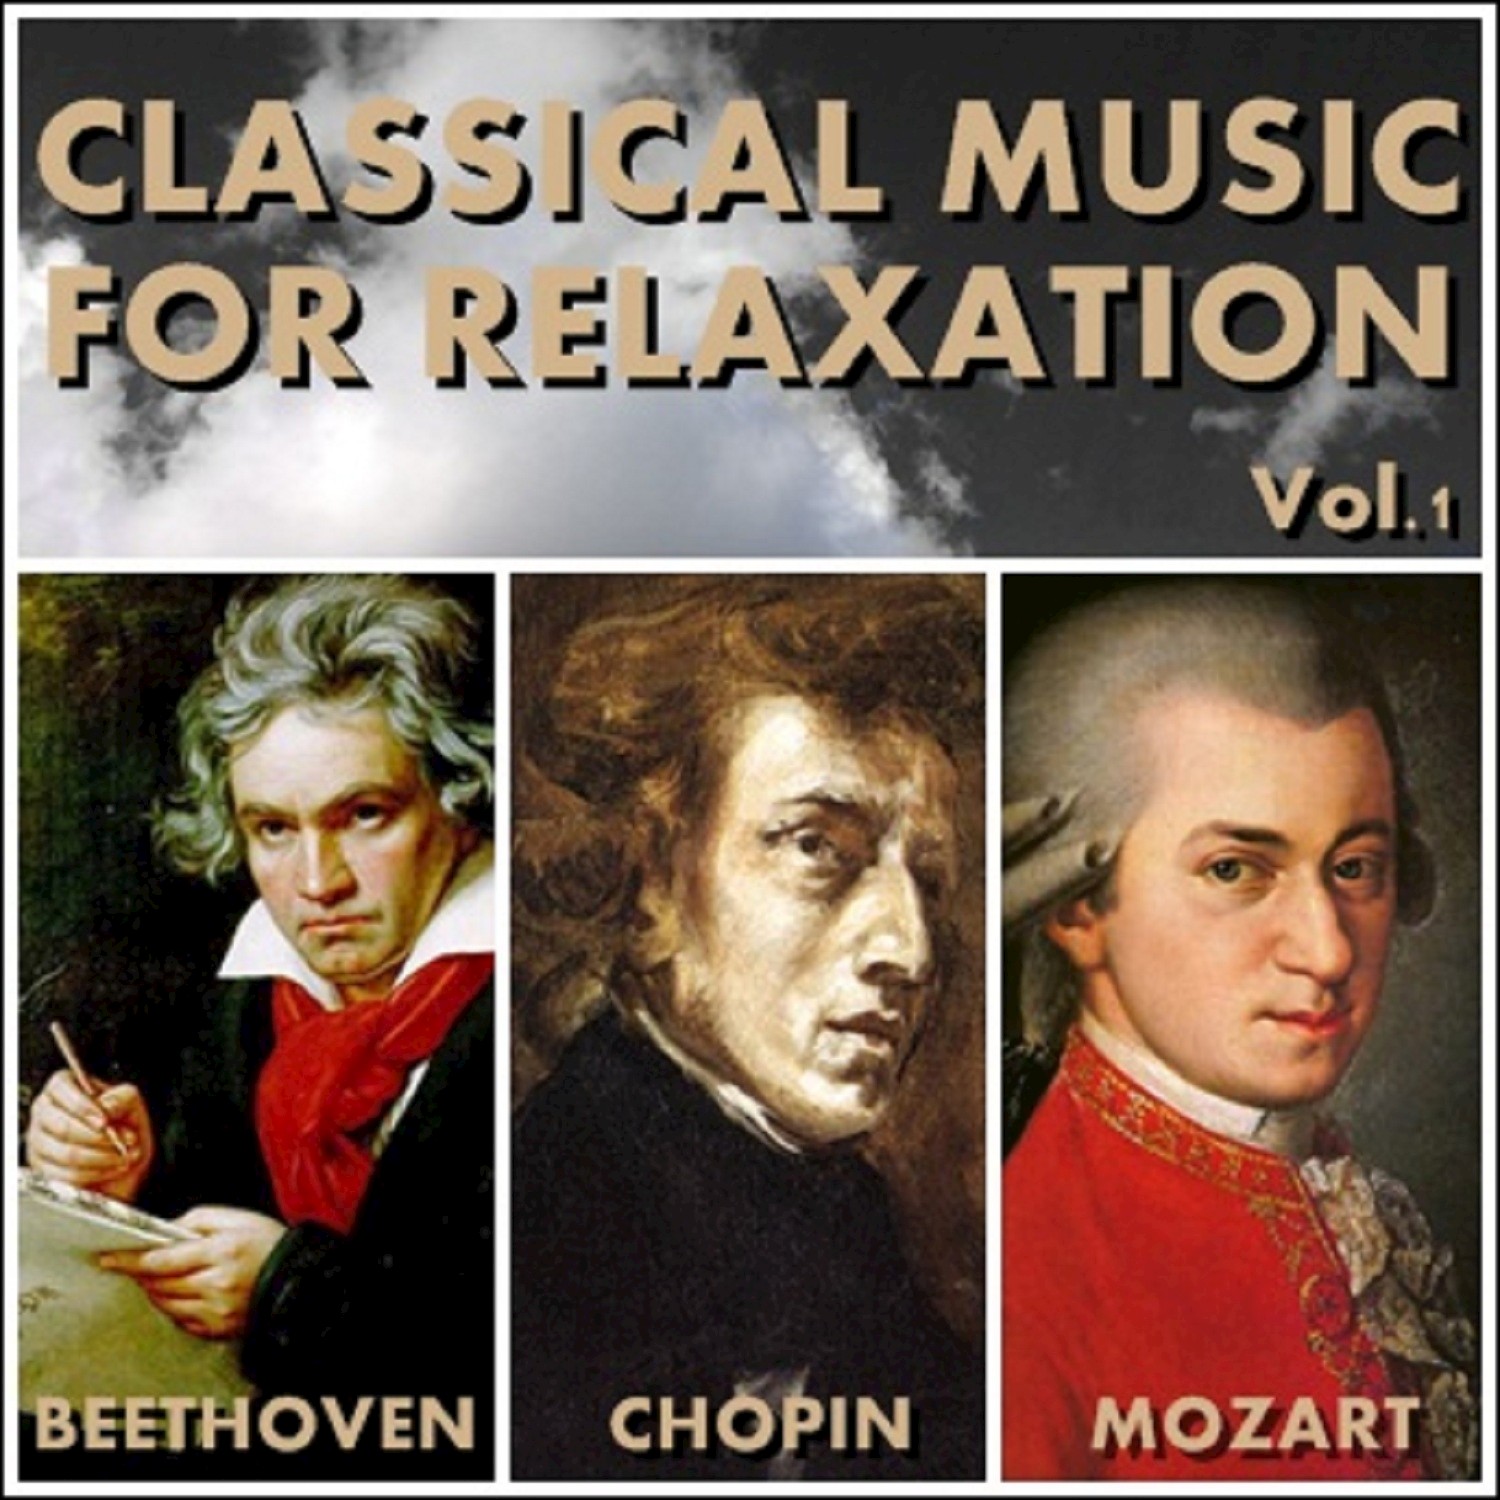 Chopin' s Valse Op. 64 No. 2 in C minor